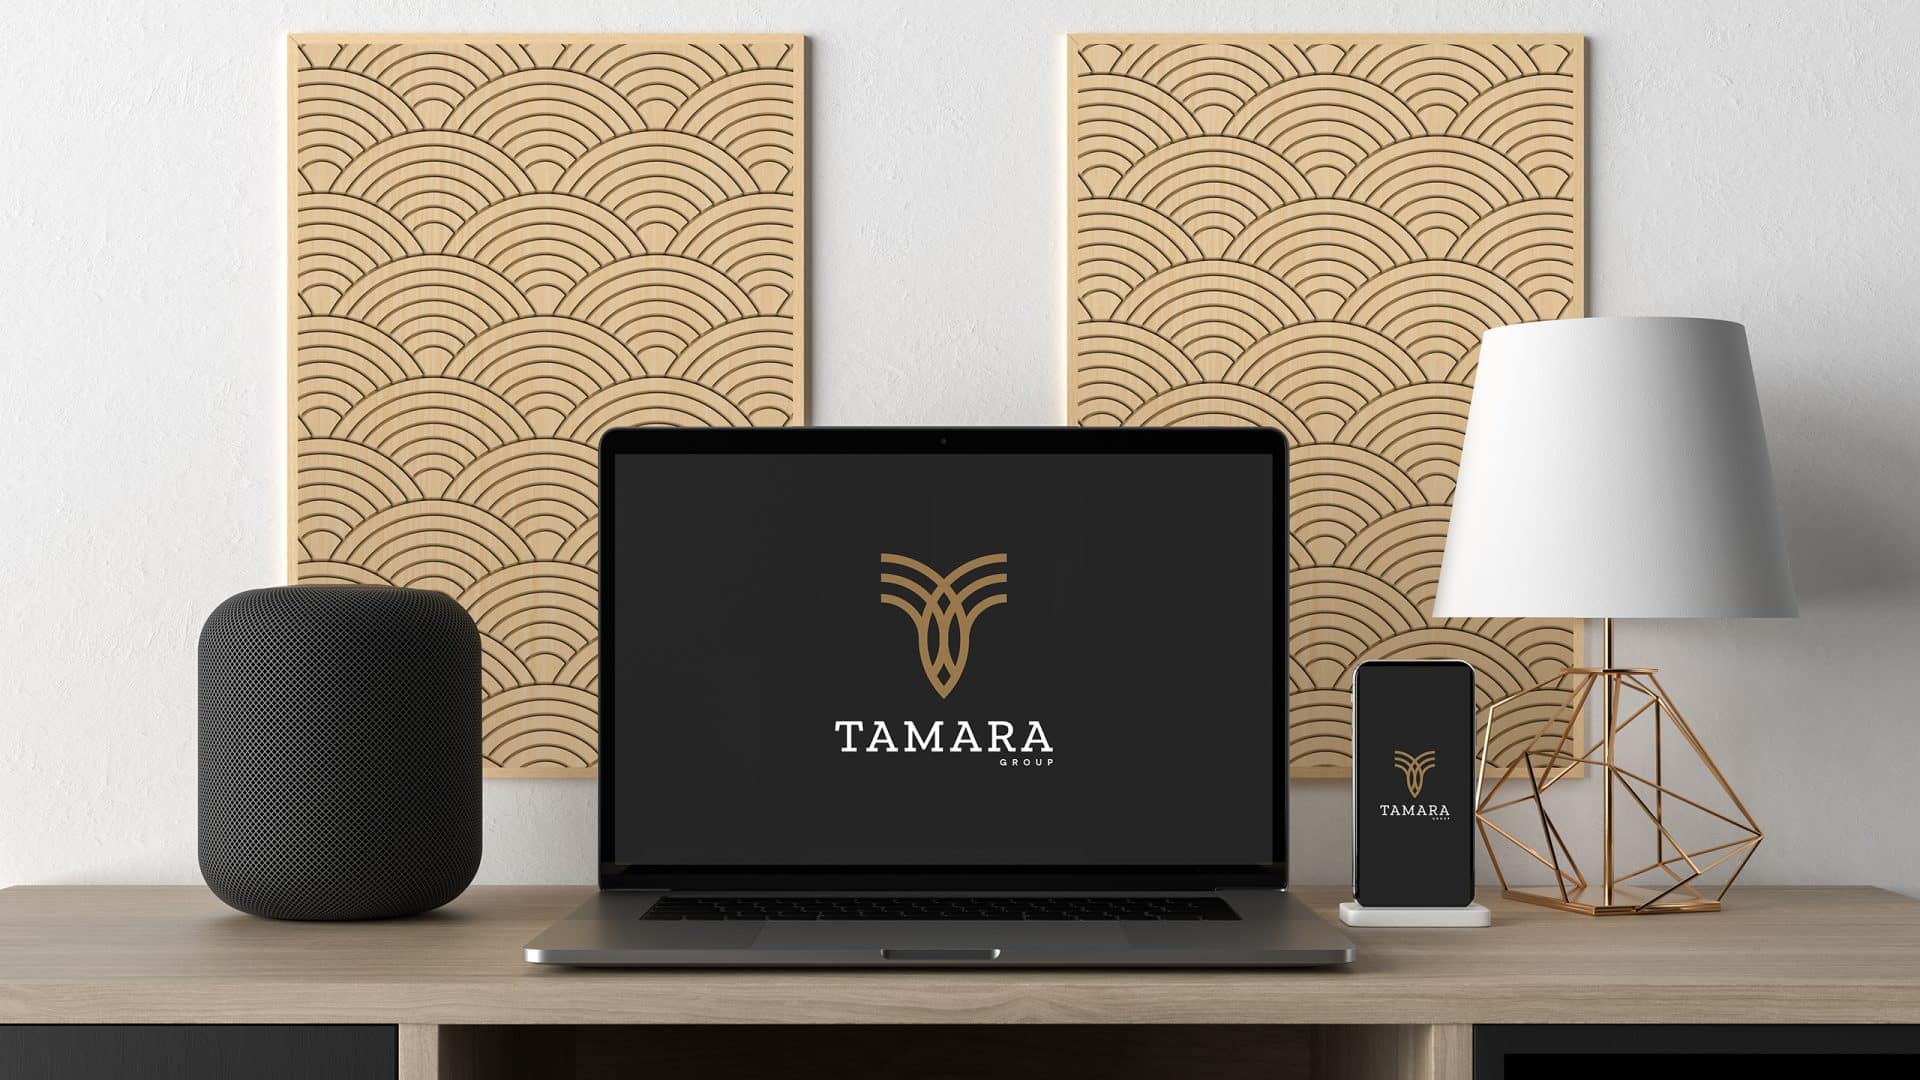 tamara brand on laptop and mopaile